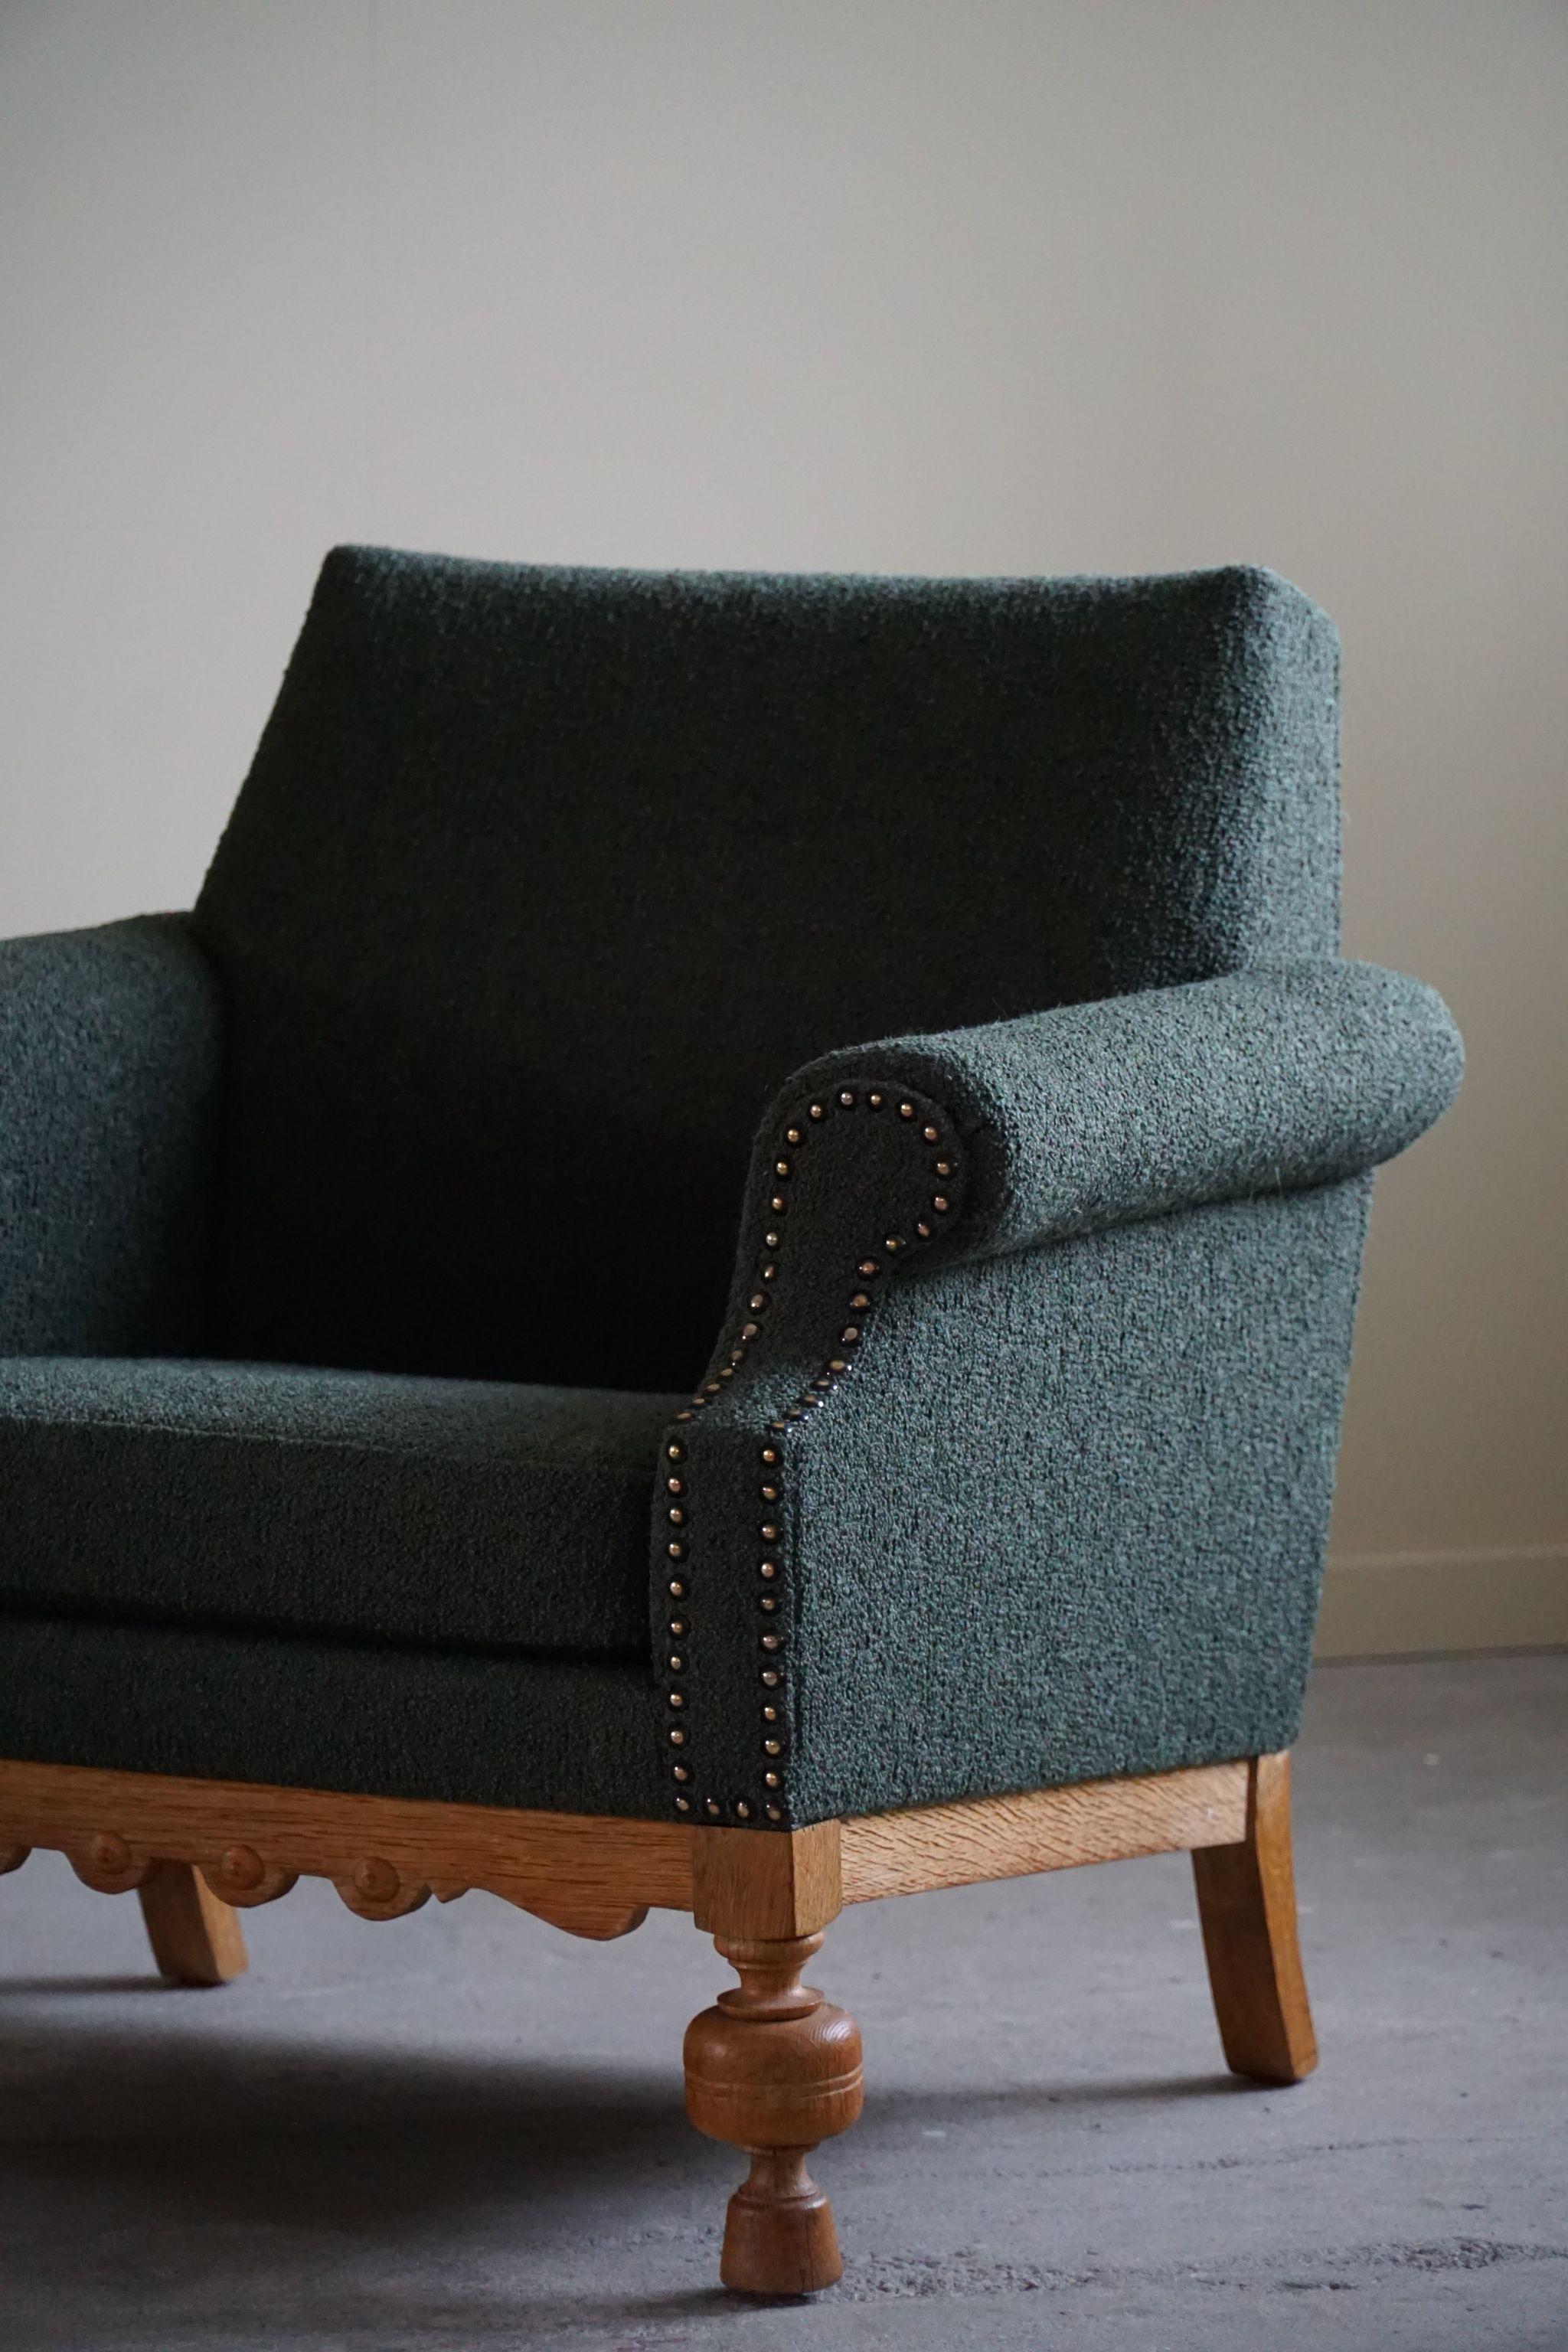 Lounge Chair in Oak & Green Bouclé, Danish Mid-Century Modern, 1950s For Sale 6